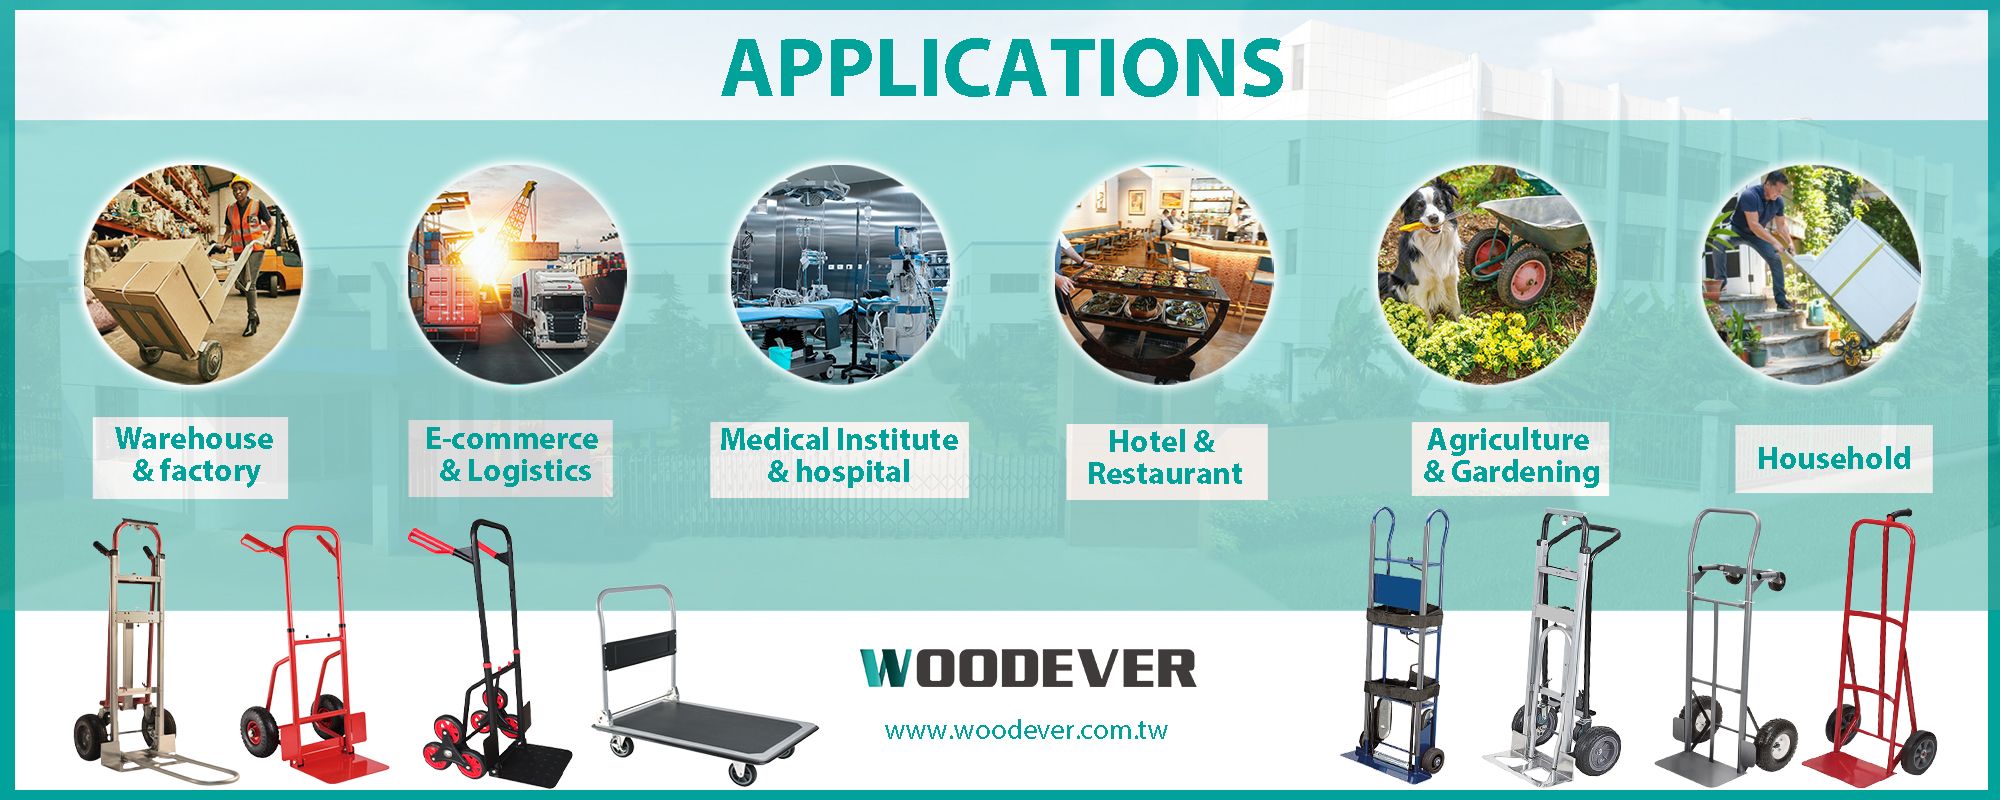 Applications de chariots dans diverses industries telles que la logistique, le médical, l'hôtel et le restaurant